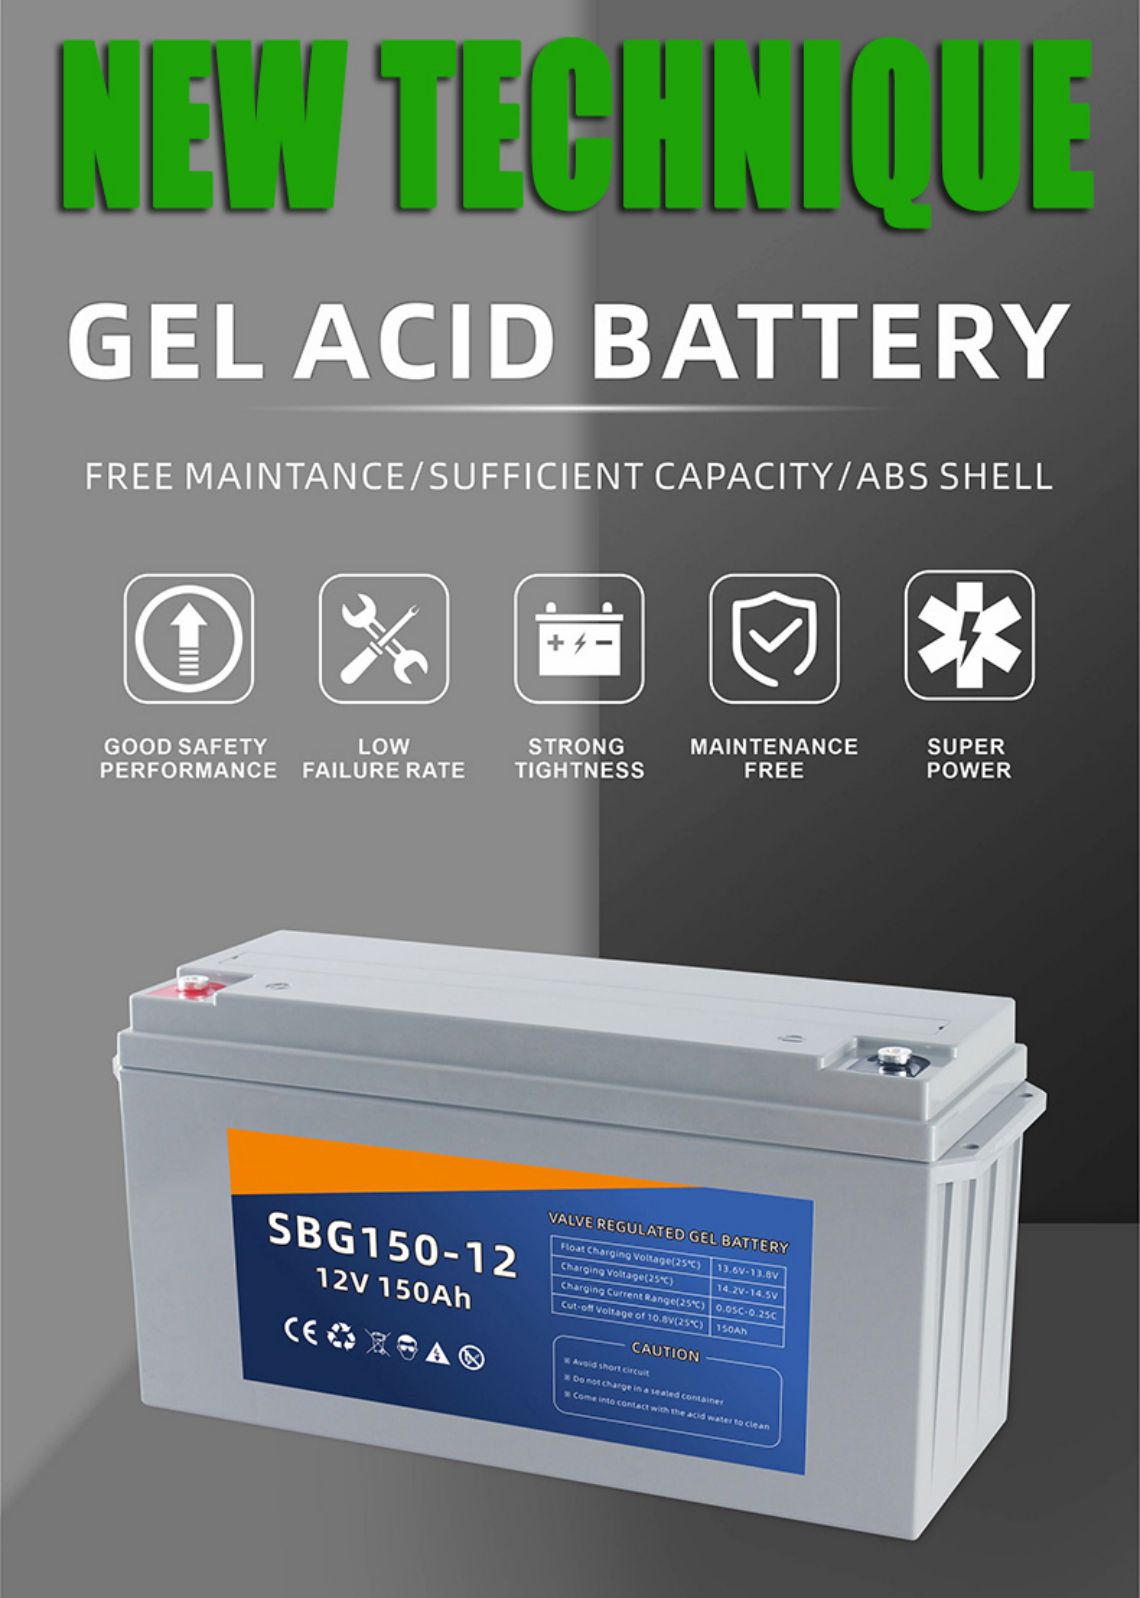  Lead Acid Battery